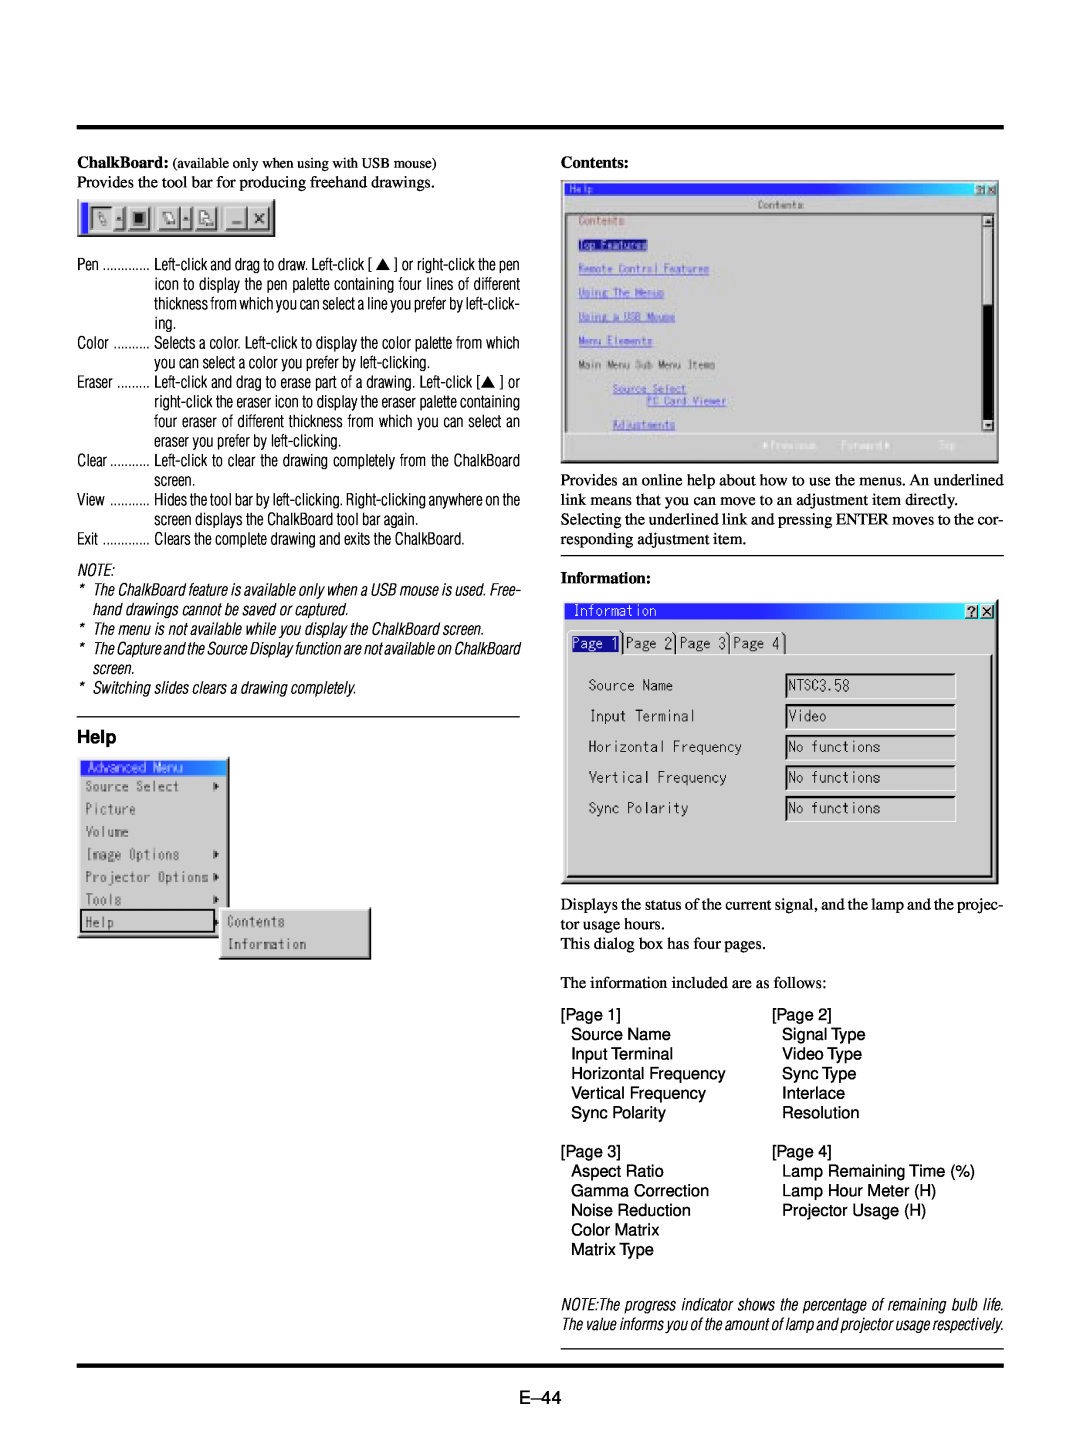 NEC LT150/LT85 user manual Help, E–44, Contents, Information 